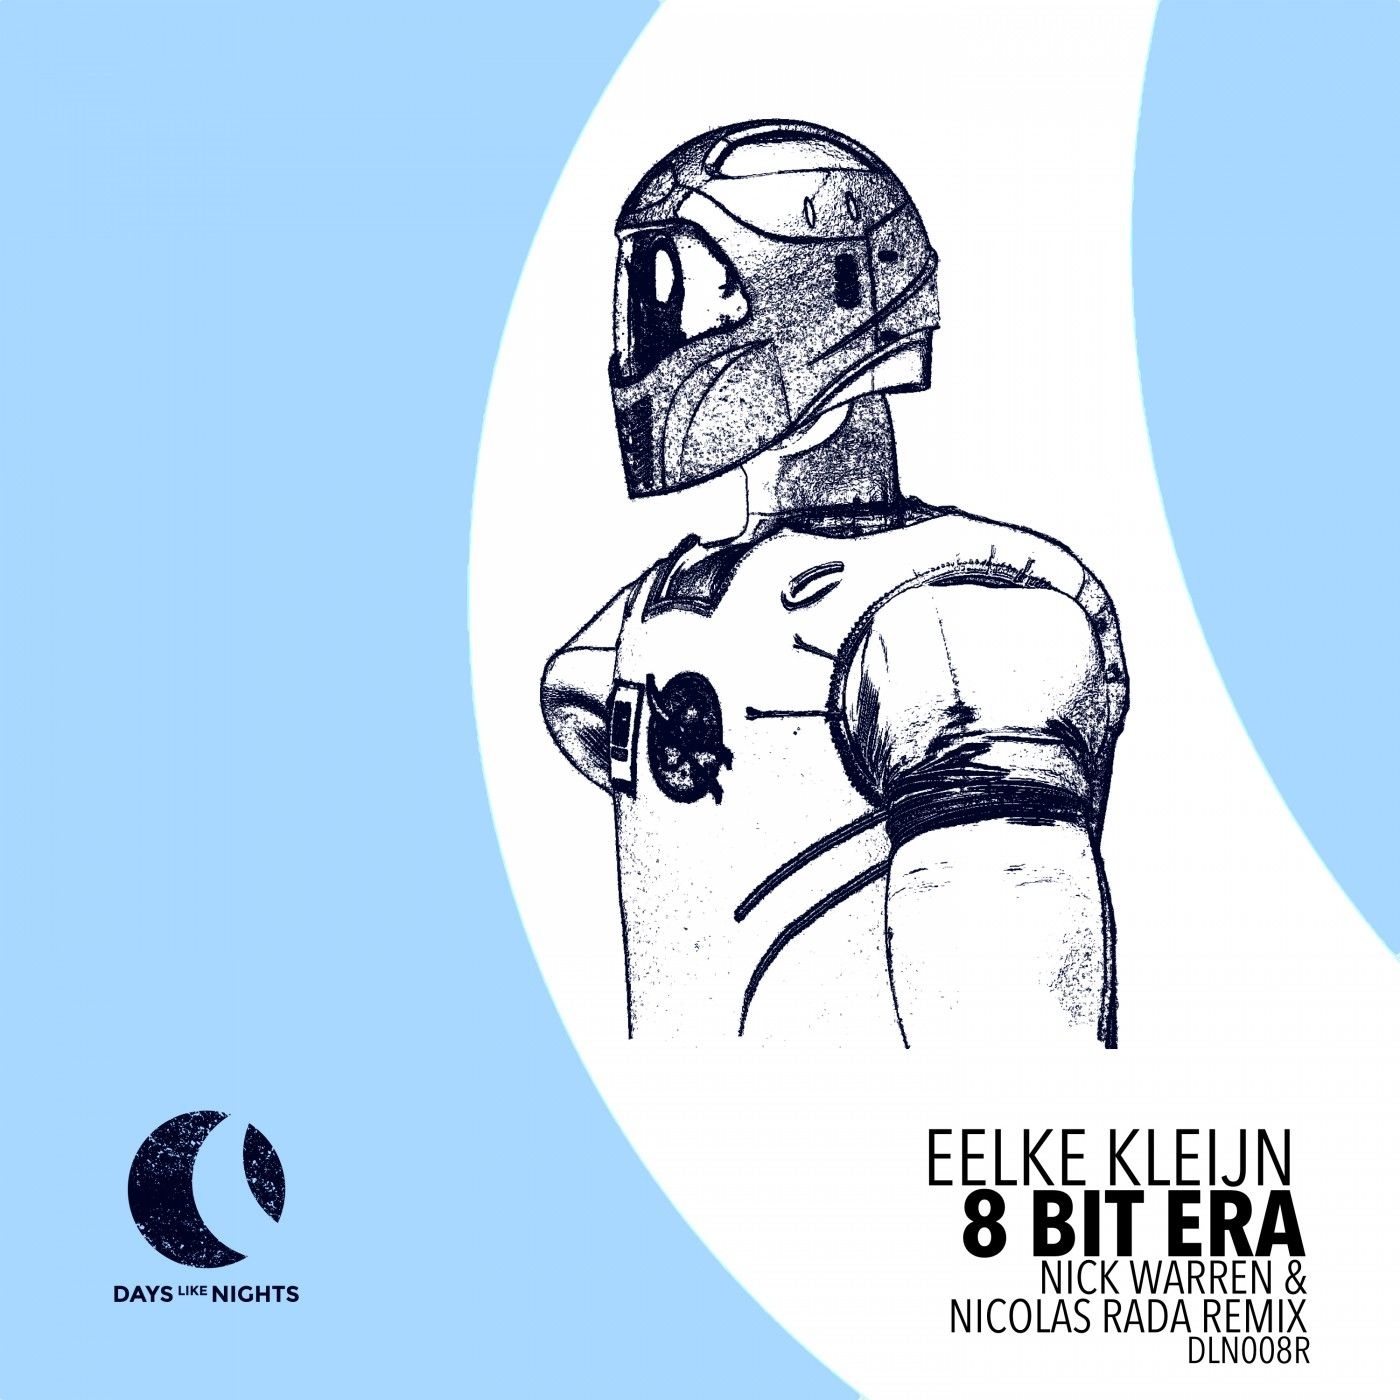 8 Bit Era (Nick Warren & Nicolas Rada Remix)